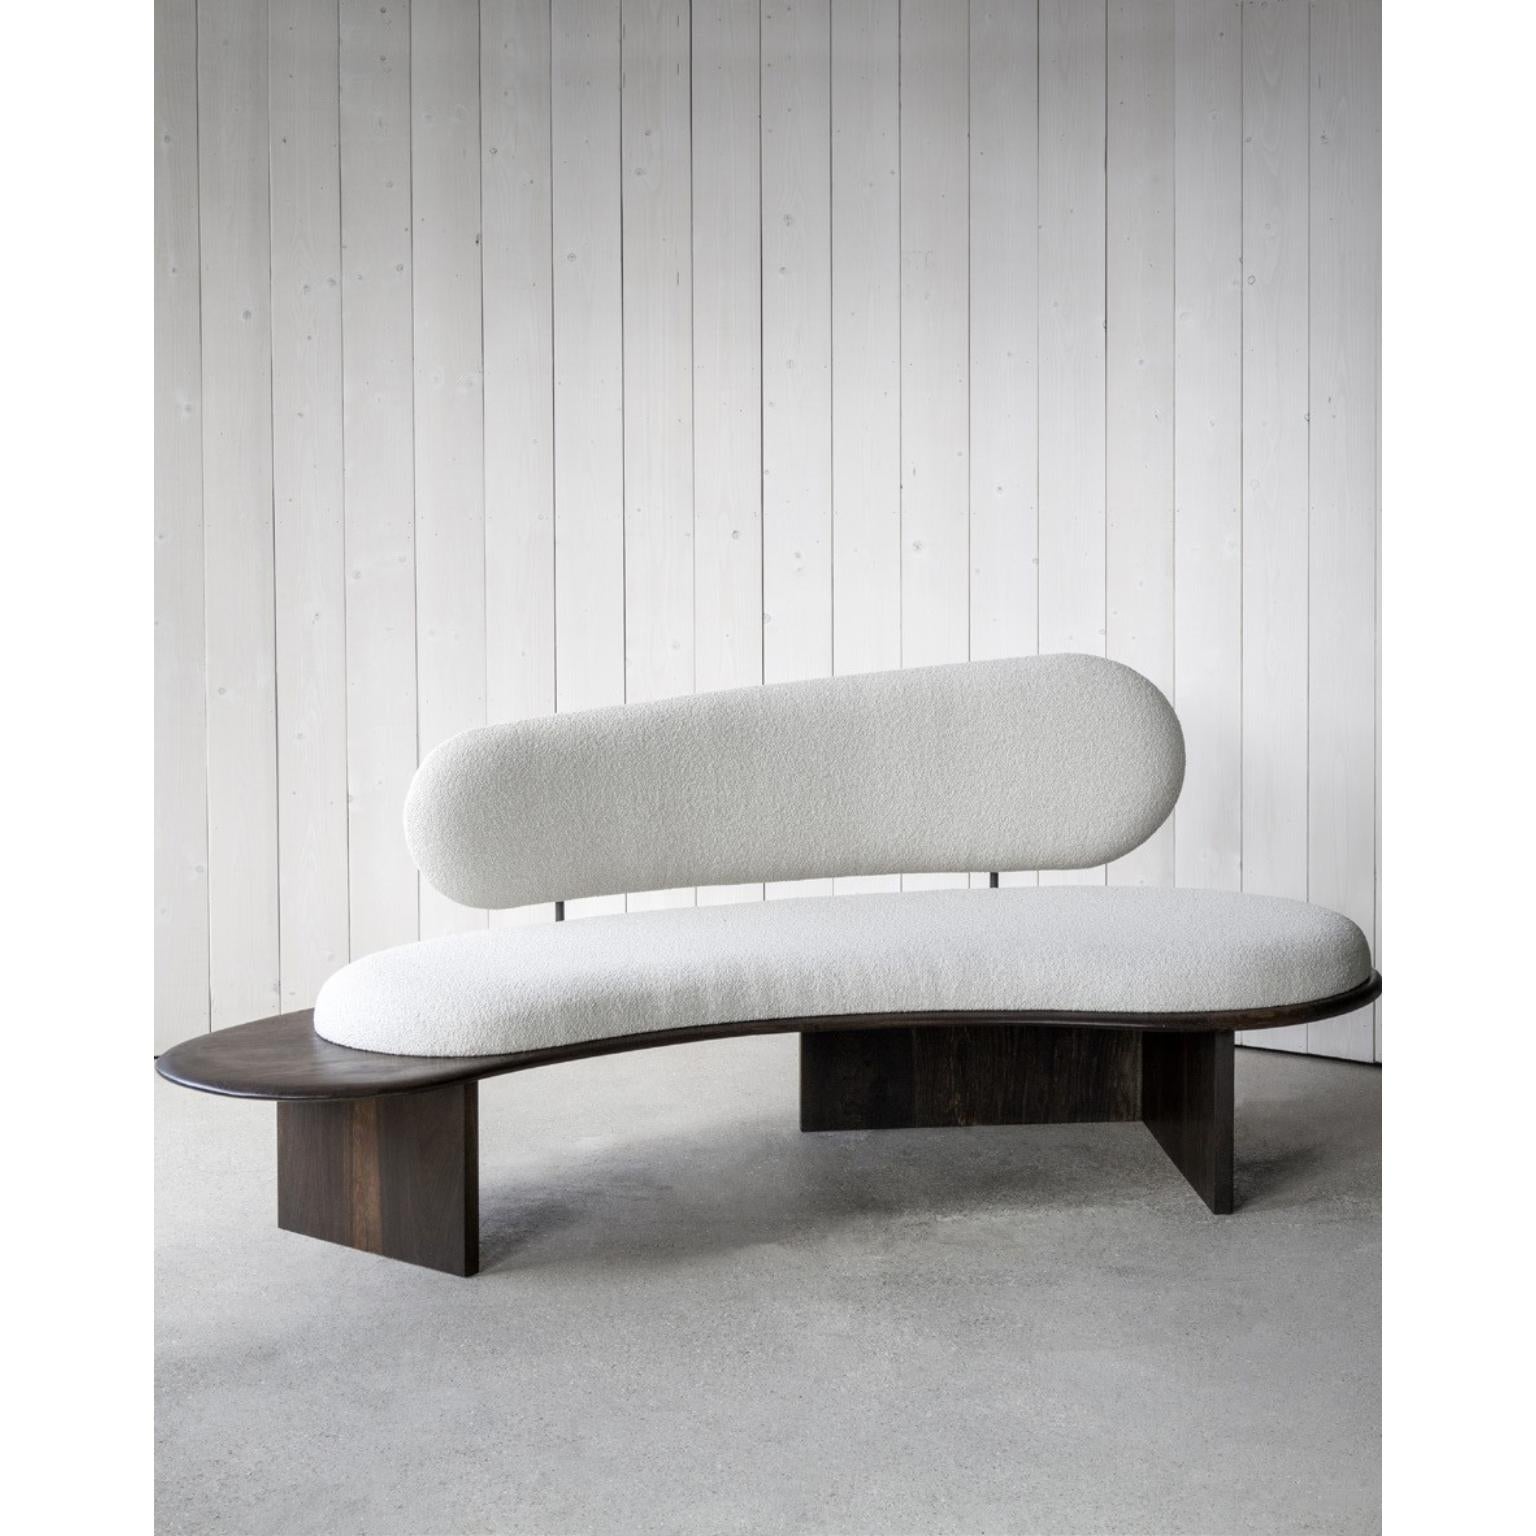 Pebble sofa von Fred Rigby Studio
Abmessungen: L 200 x B 90 x H 80 cm
MATERIALIEN: Eiche massiv, Dedar-Bouclé-Gewebe aus Wolle, naturfarben ebonisiert und geölt

Fred Rigby Studio ist ein in London ansässiges Möbel- und Innenarchitekturbüro, das